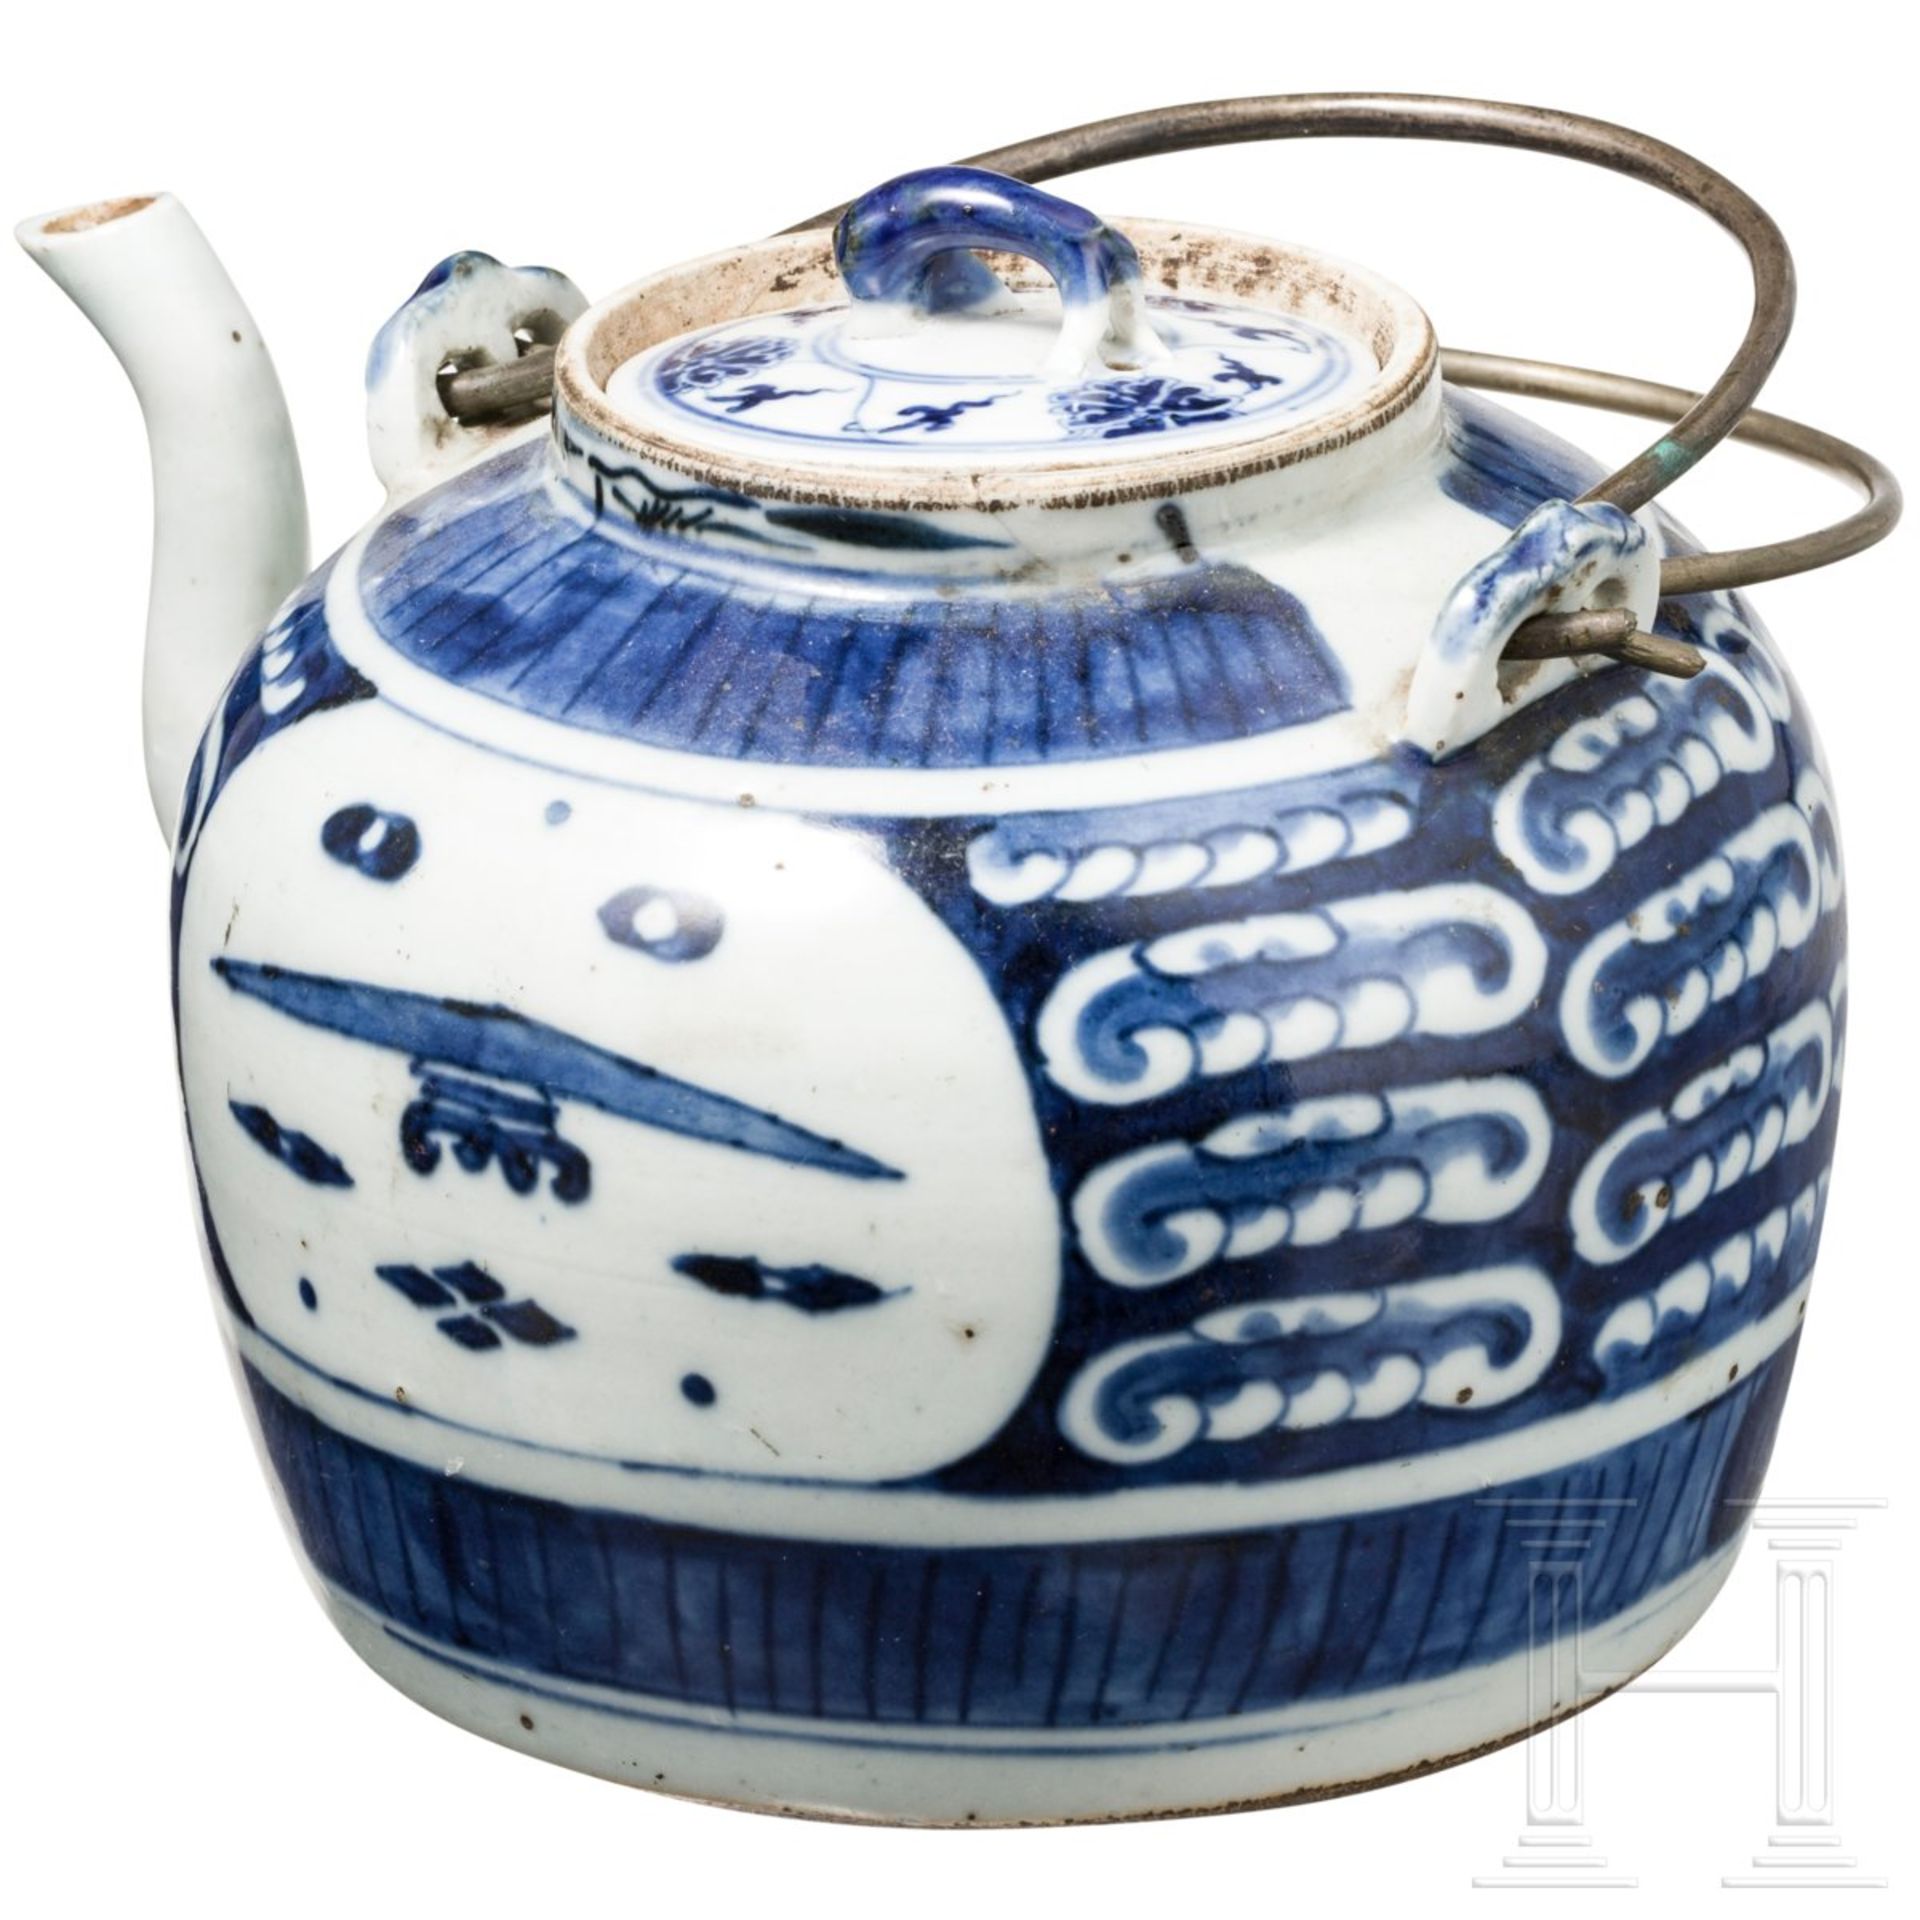 Blau-weiße Porzellan-Teekanne, China, 18. Jhdt. - Bild 2 aus 3